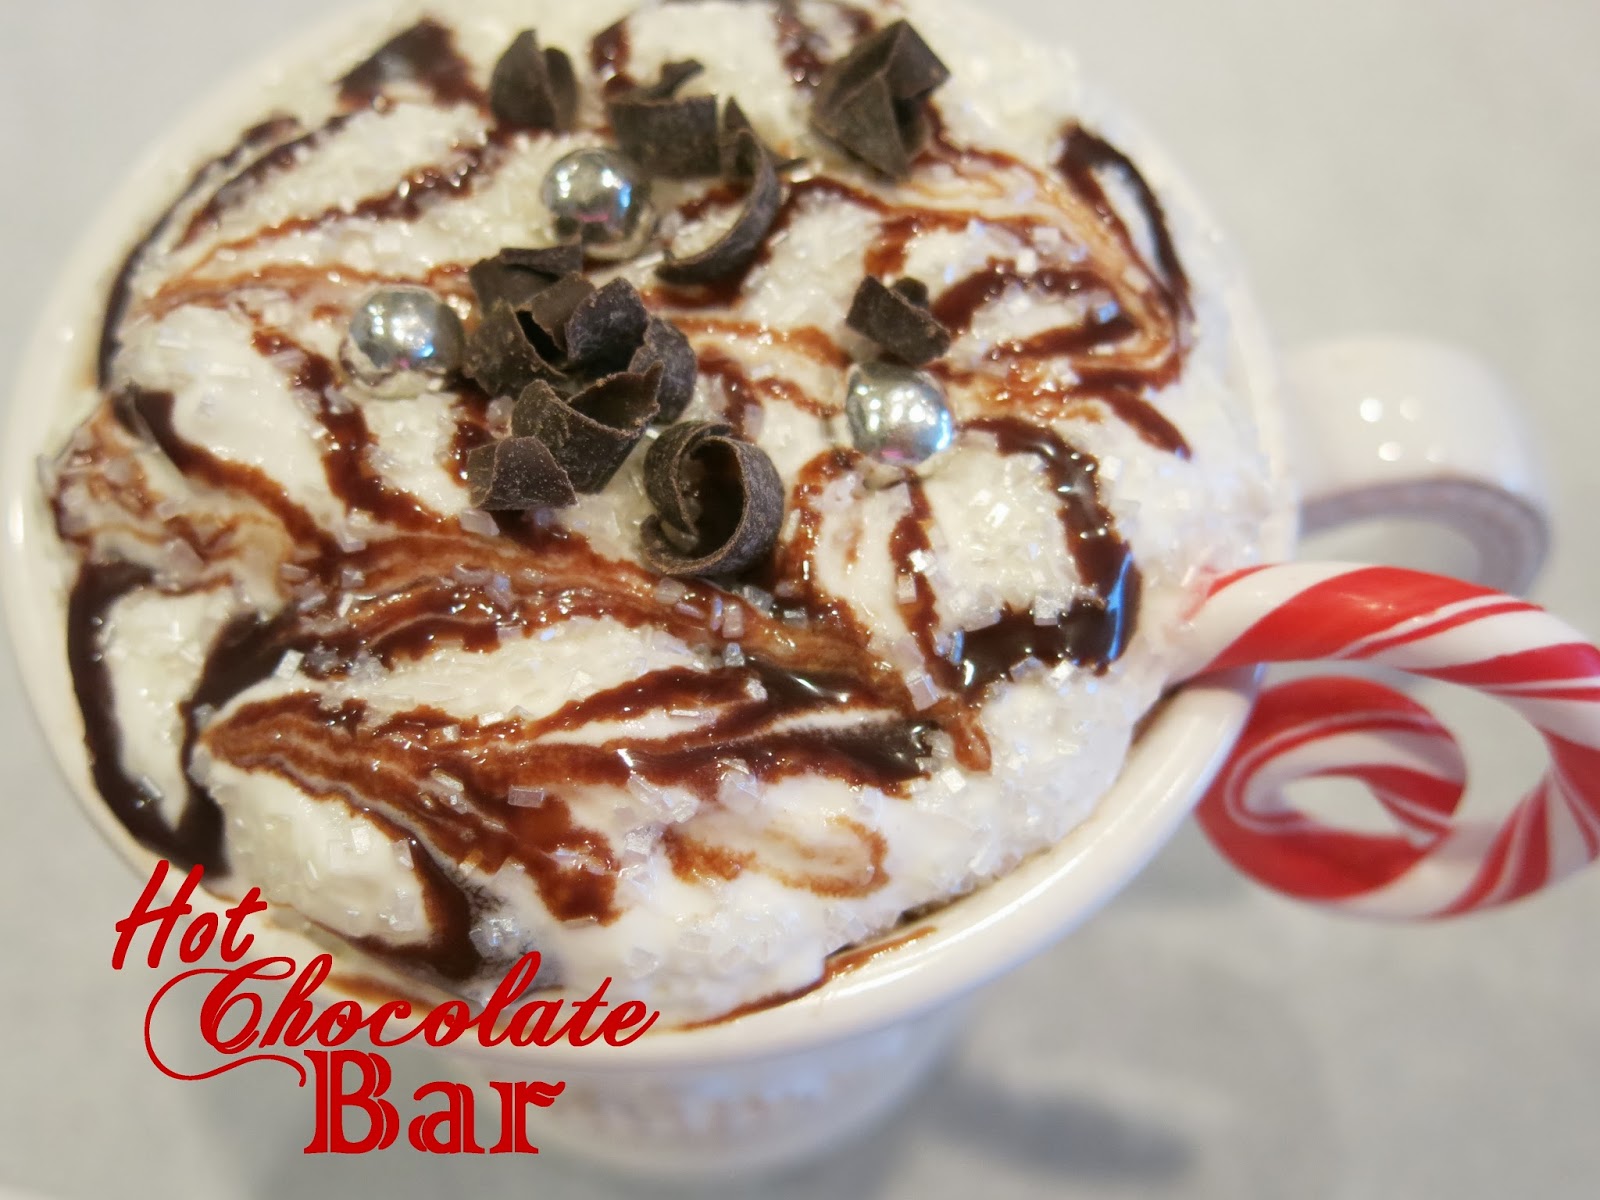 Hot Chocolate Bar and Shari's Berries Dessert Table